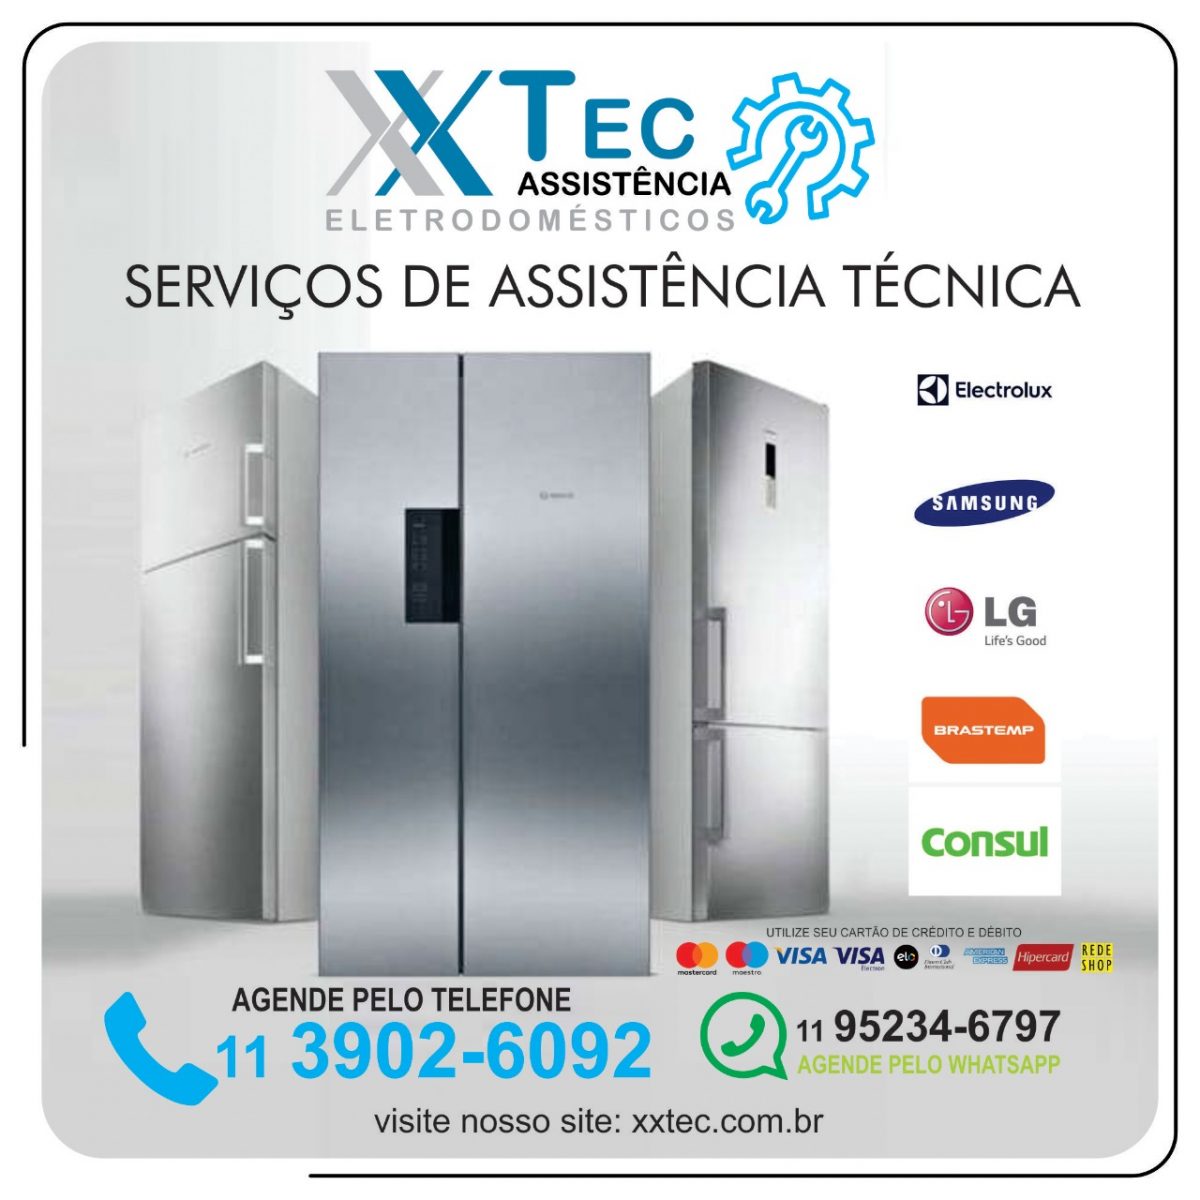 xxtec.com.br-refrigeradores